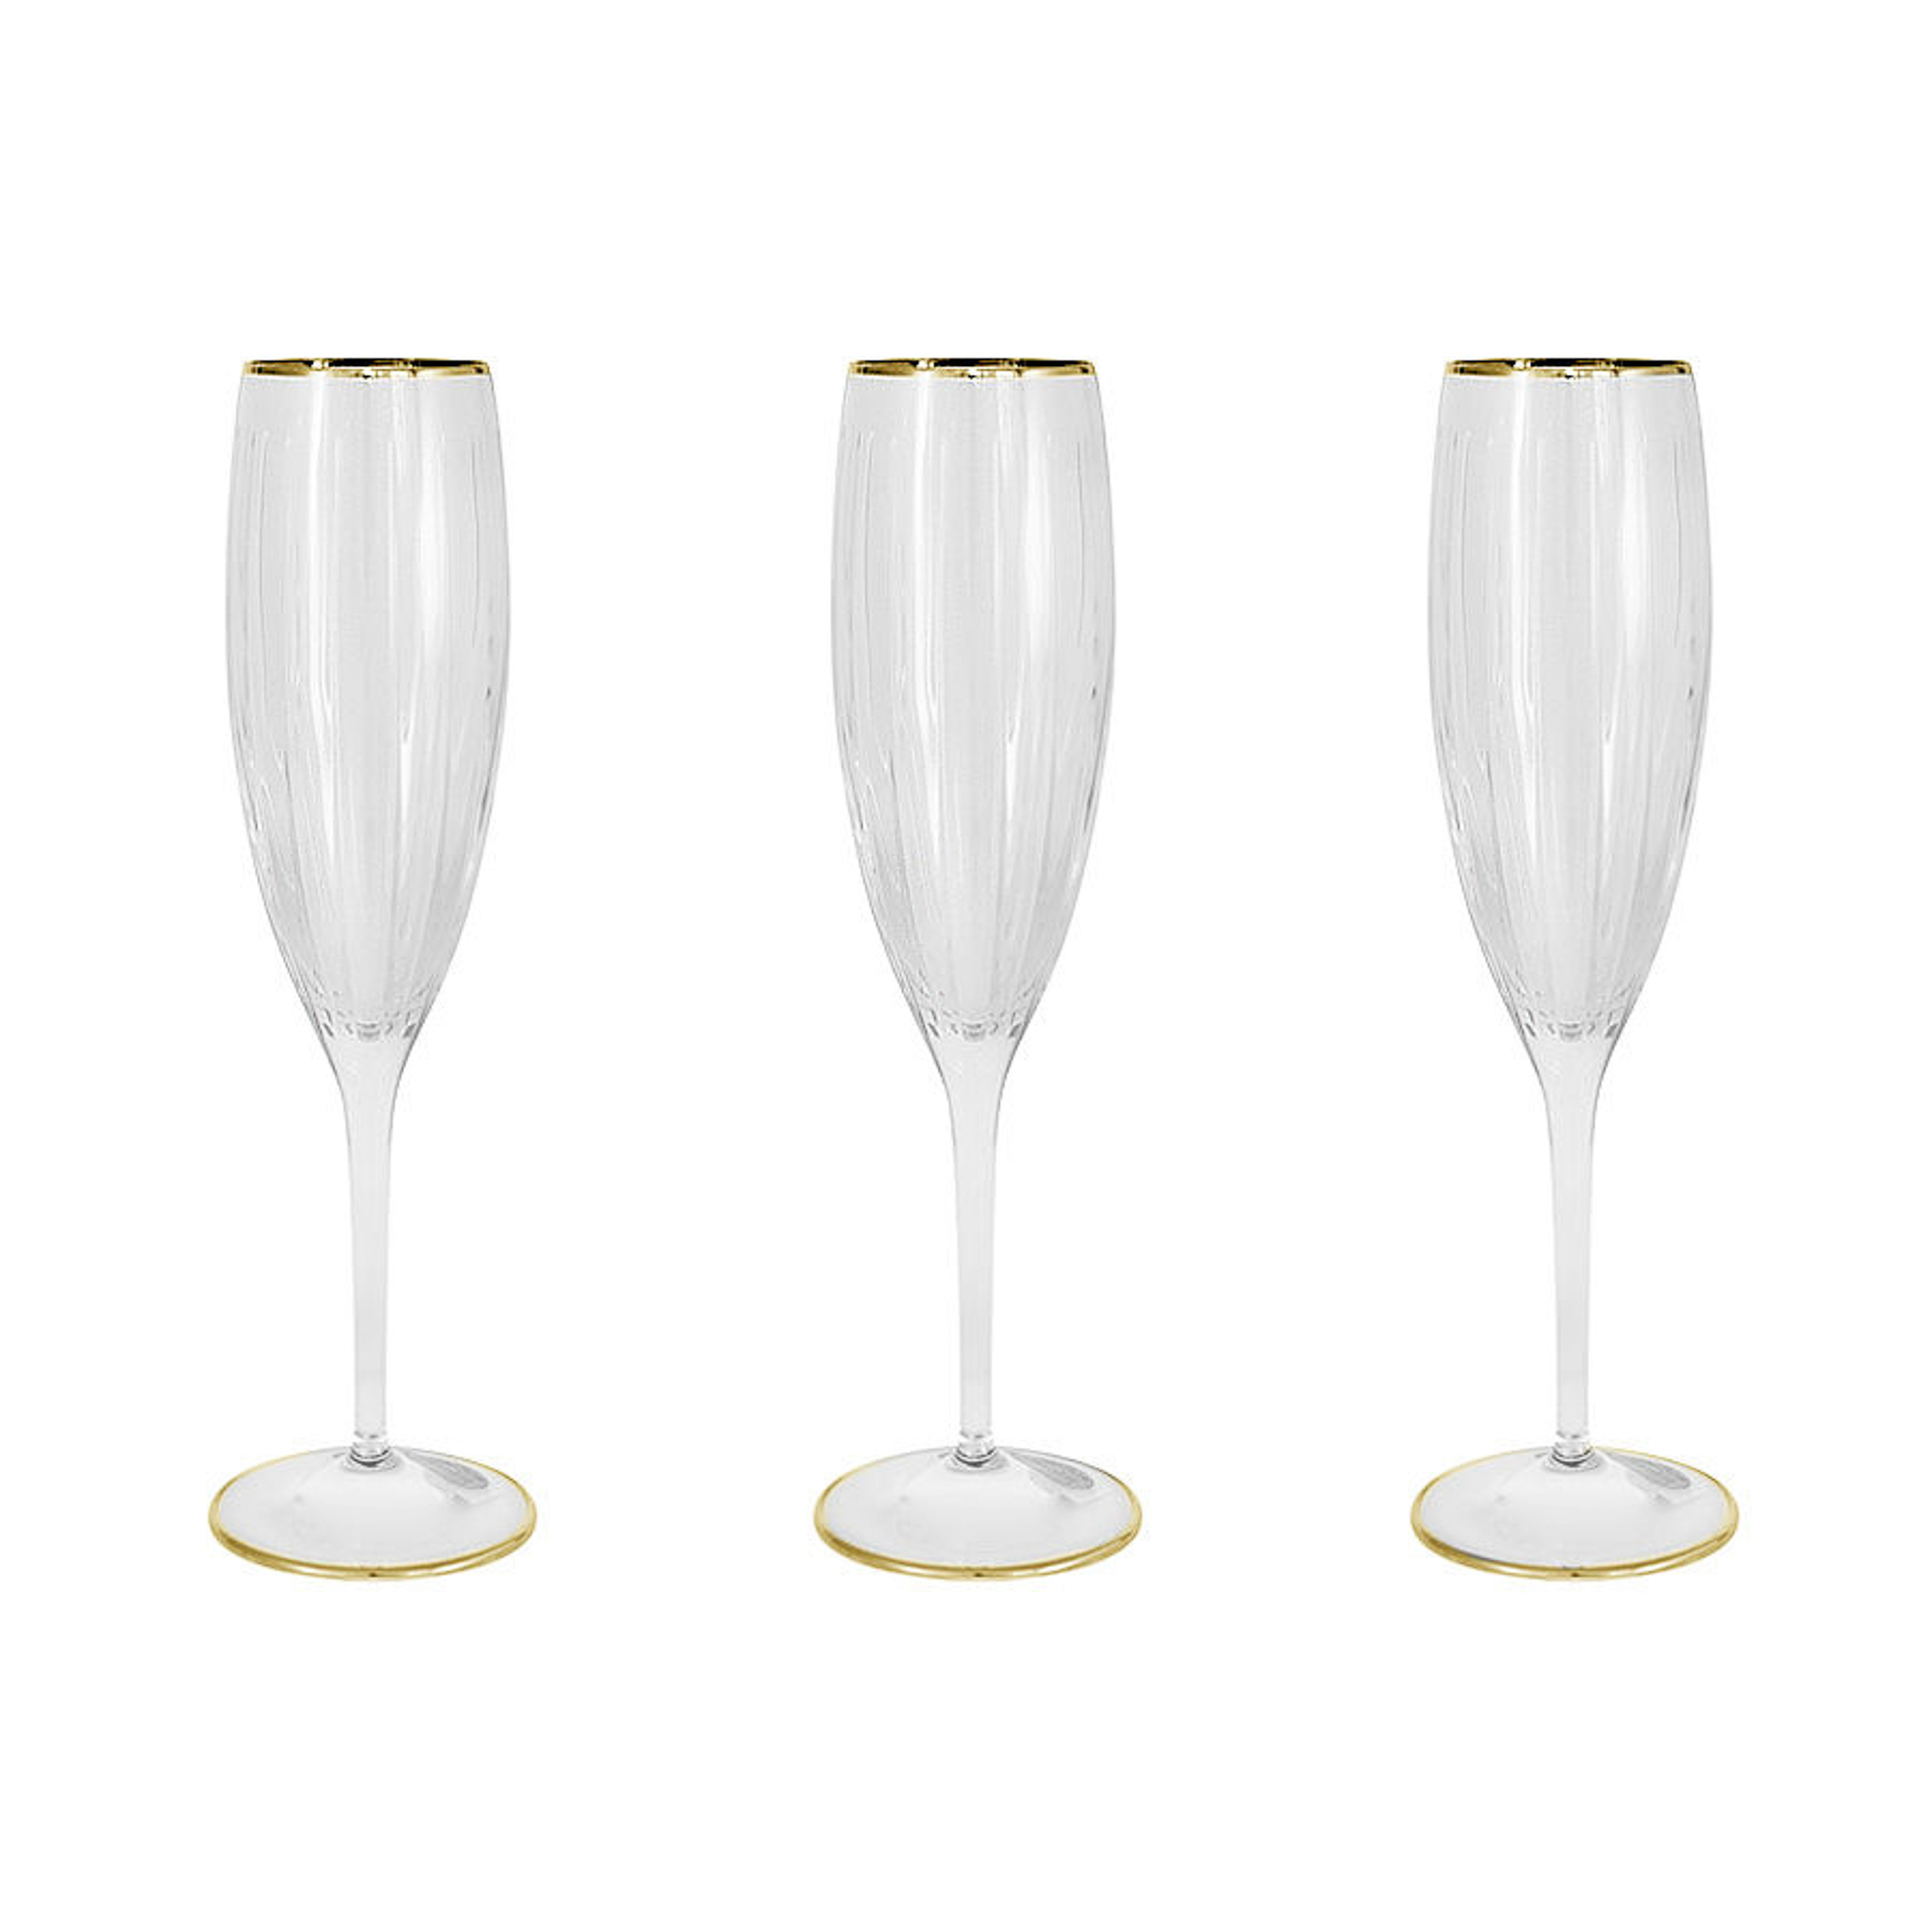 Набор фужеров Same Пиза золото для шампанского 150 мл 6 шт набор фужеров krosno романтика для шампанского 0 17 л